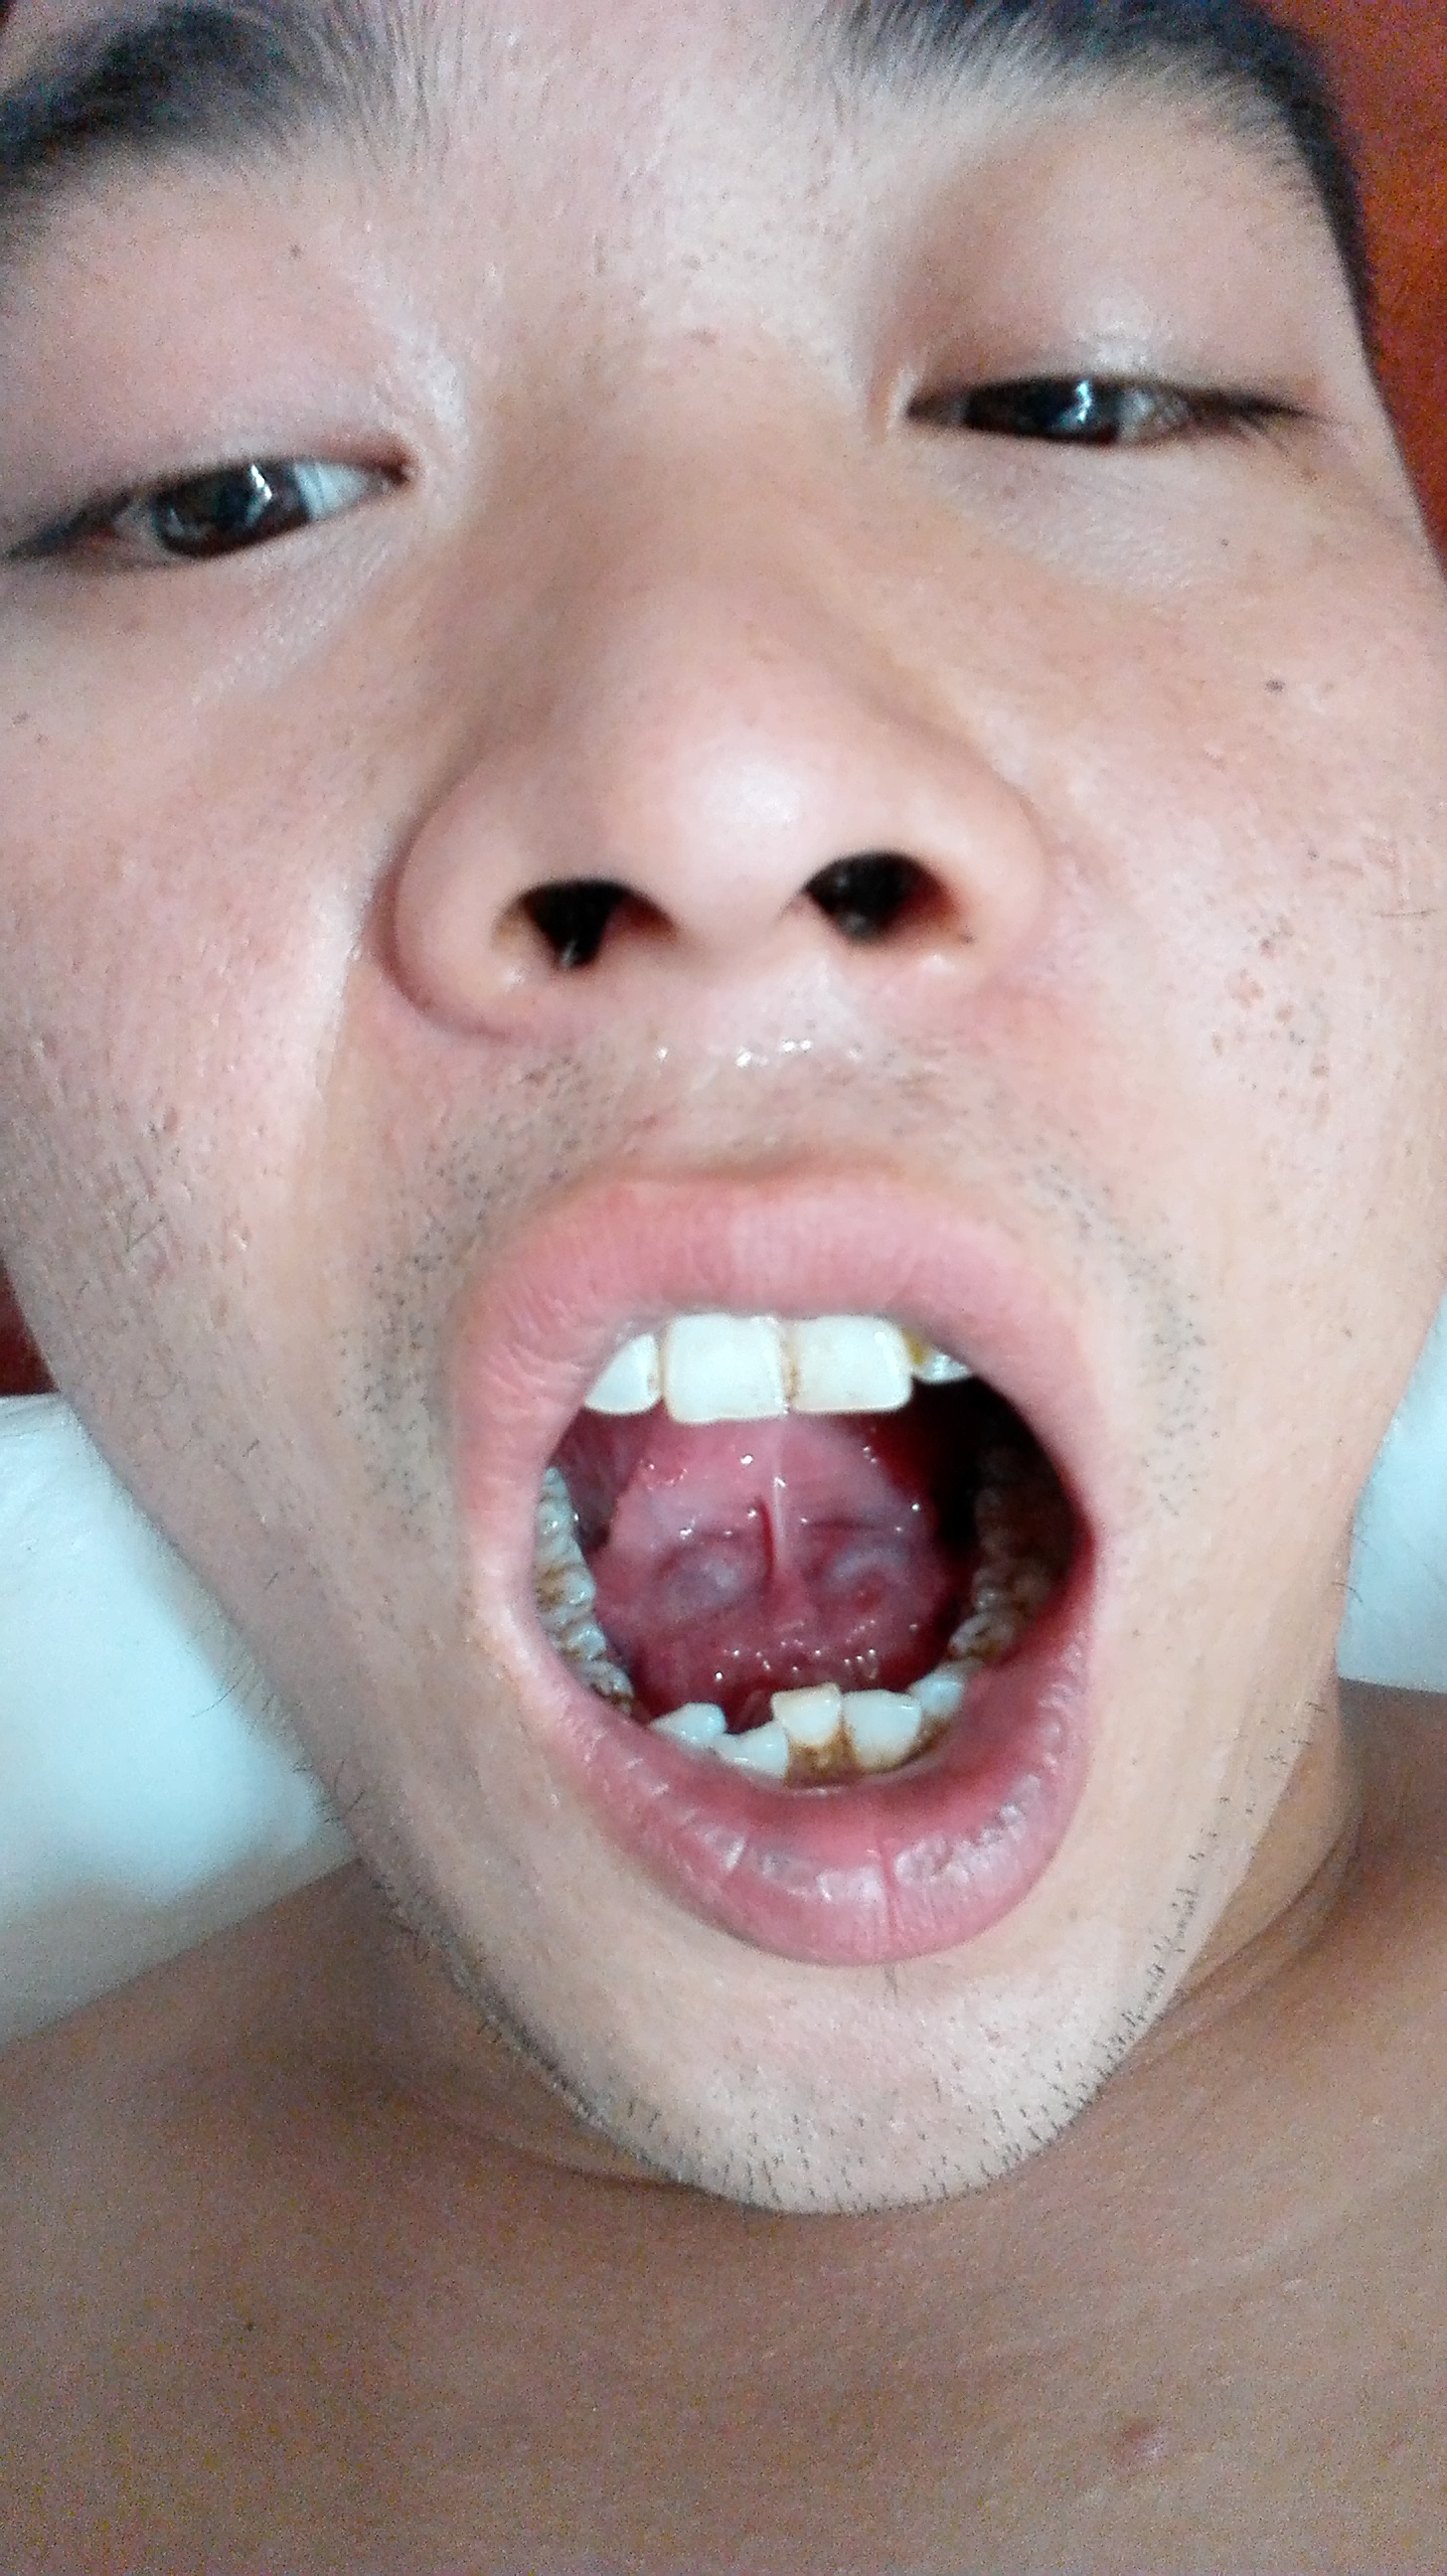 舌下黏膜皱襞图片